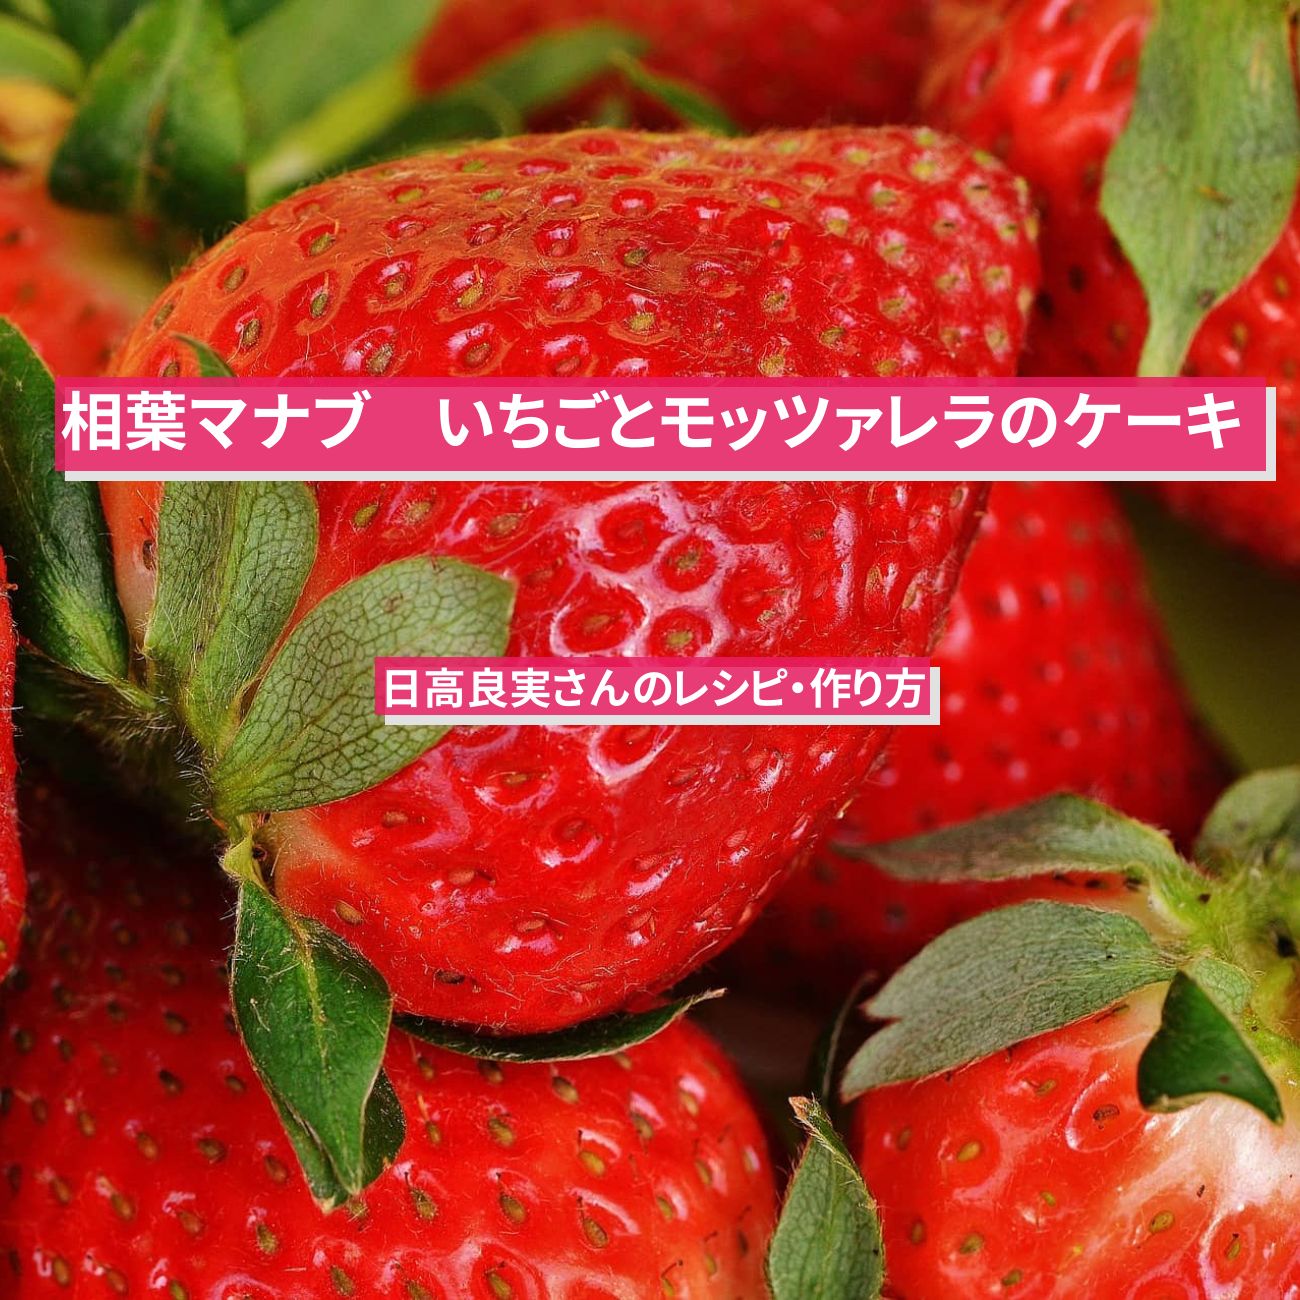 【相葉マナブ】『いちごとモッツァレラのケーキ』日高良実さんのレシピ・作り方